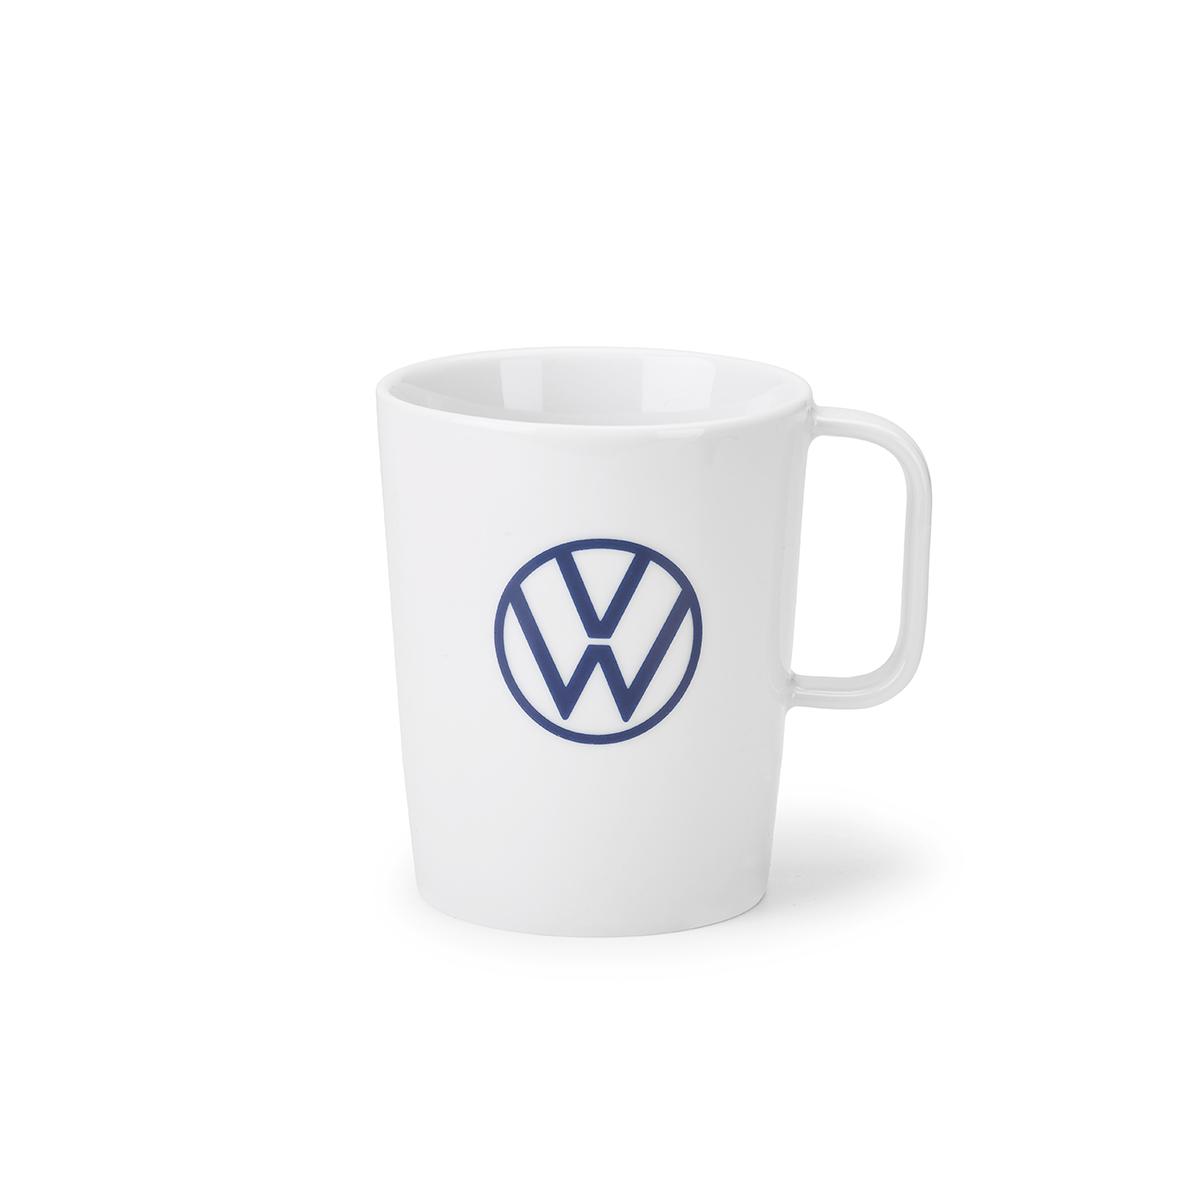 Kubek - nowe logo VW, biały